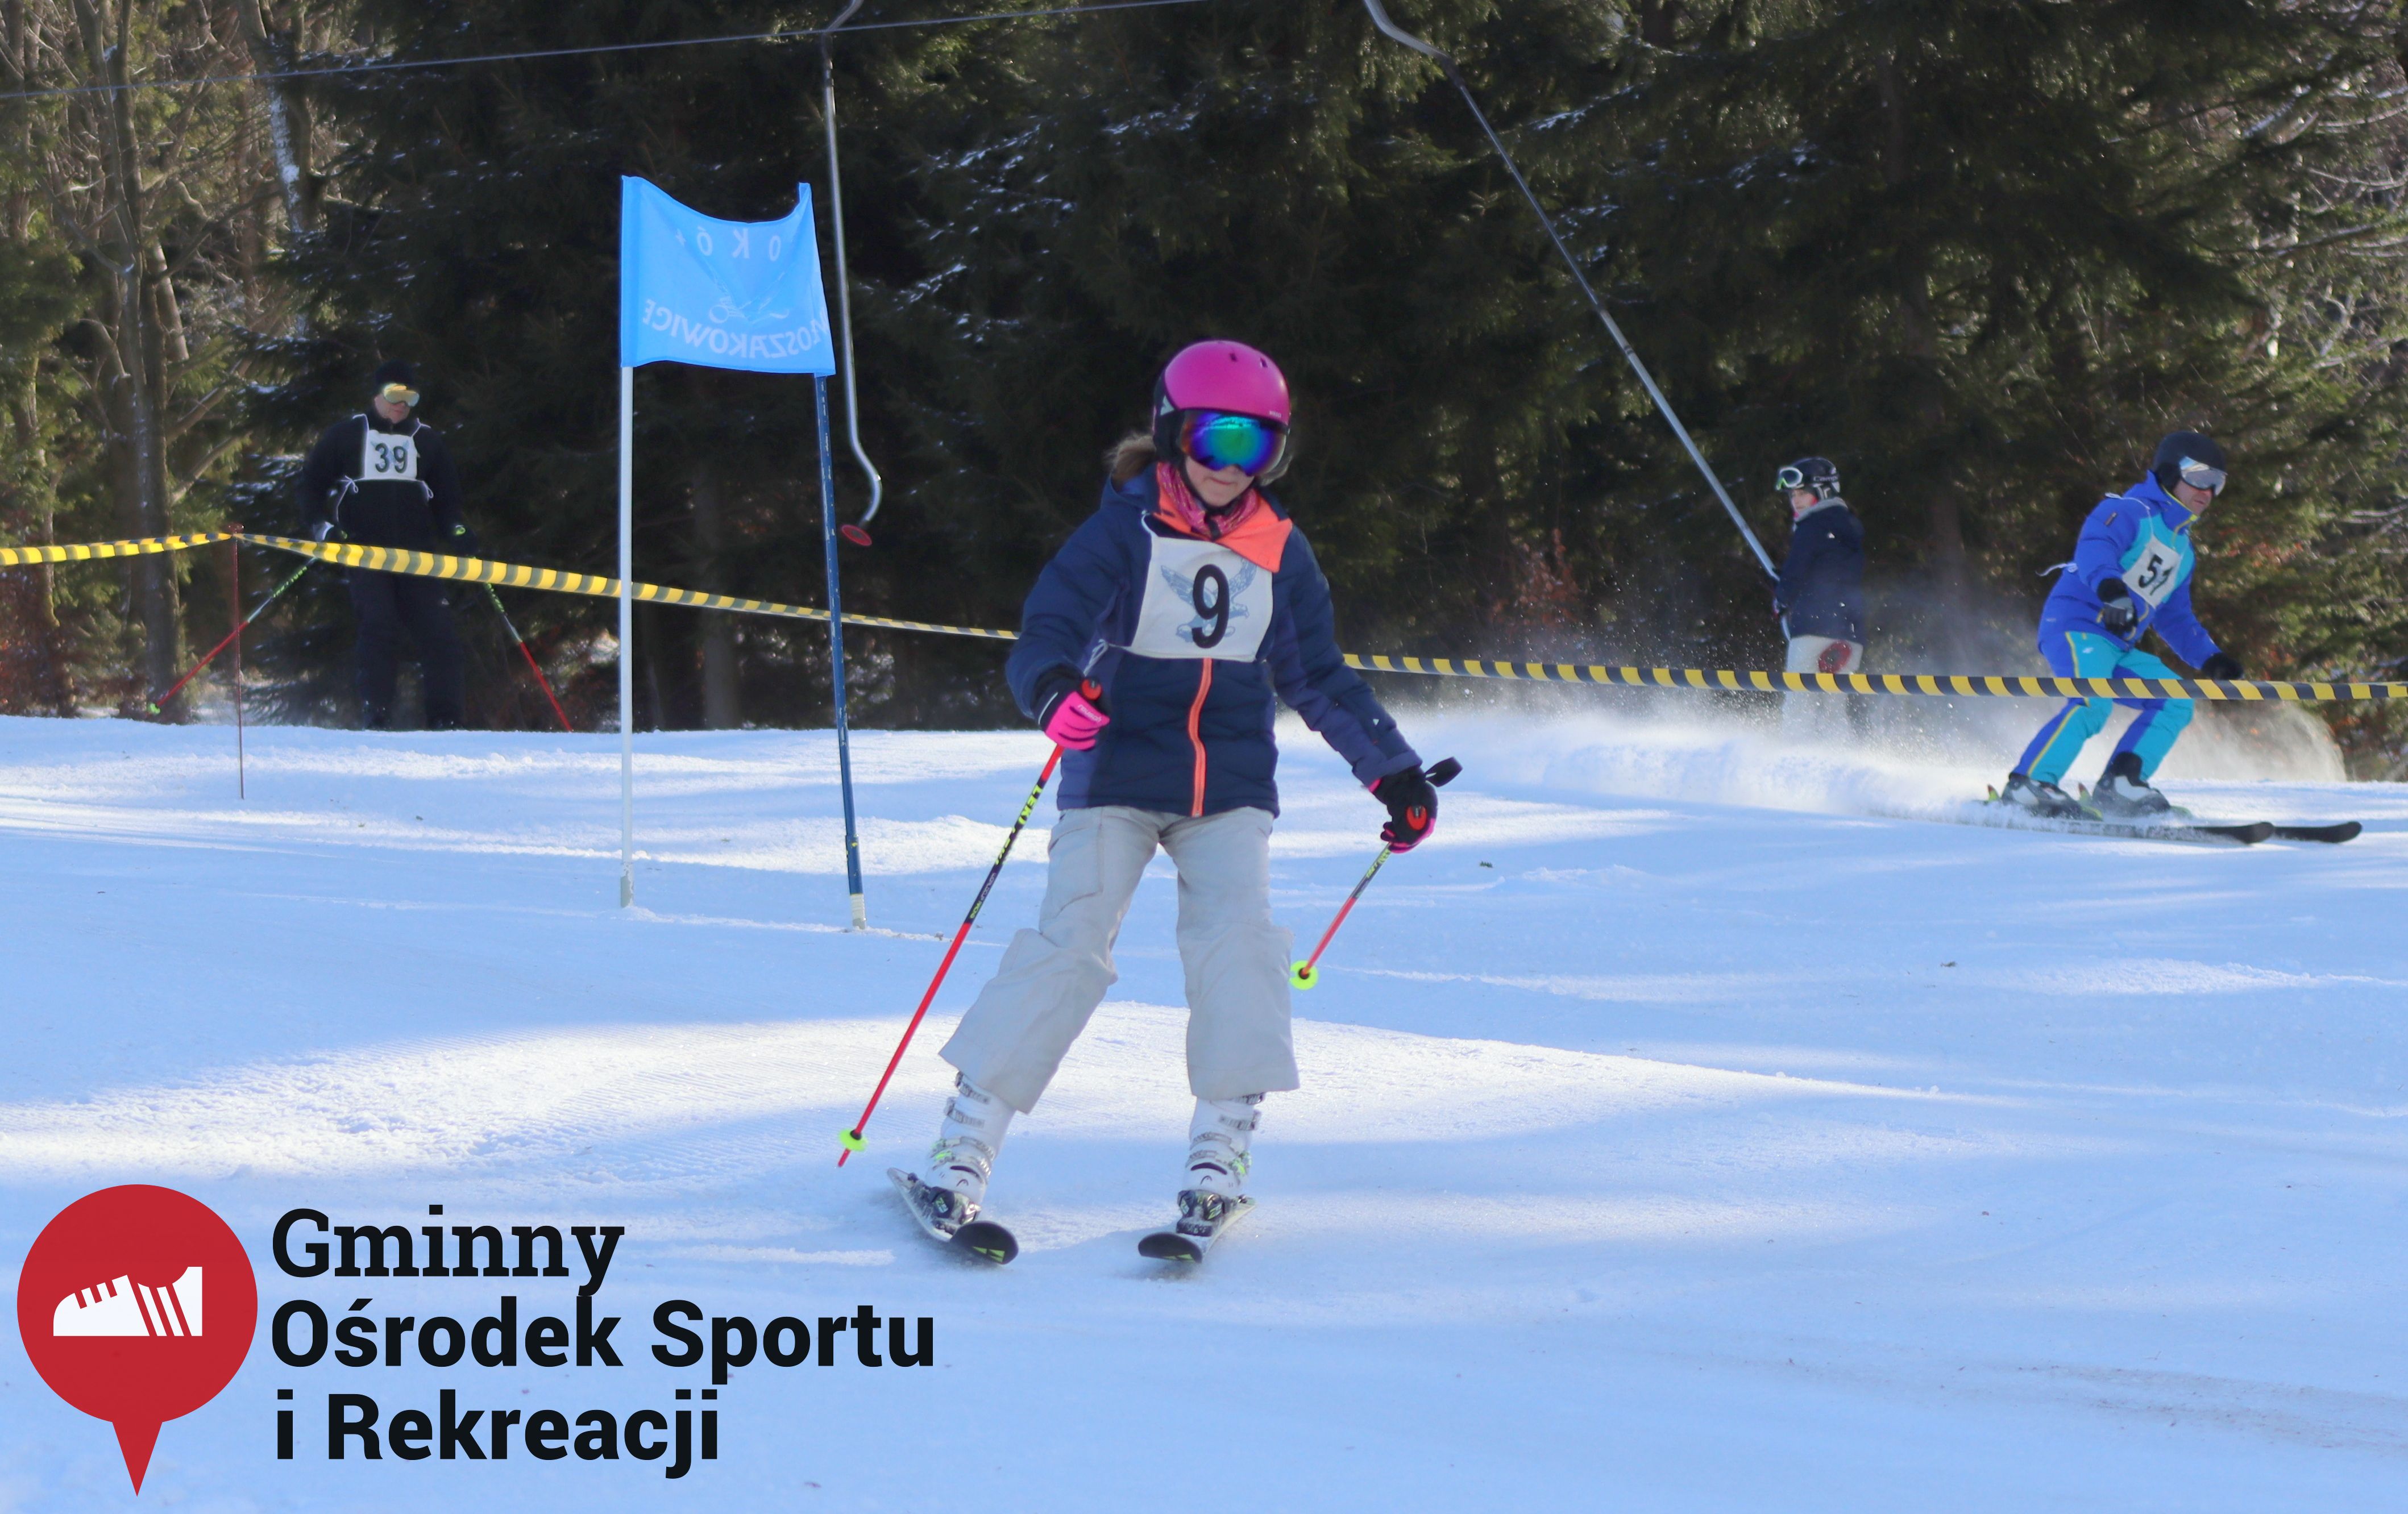 2022.02.12 - 18. Mistrzostwa Gminy Woszakowice w narciarstwie027.jpg - 980,40 kB